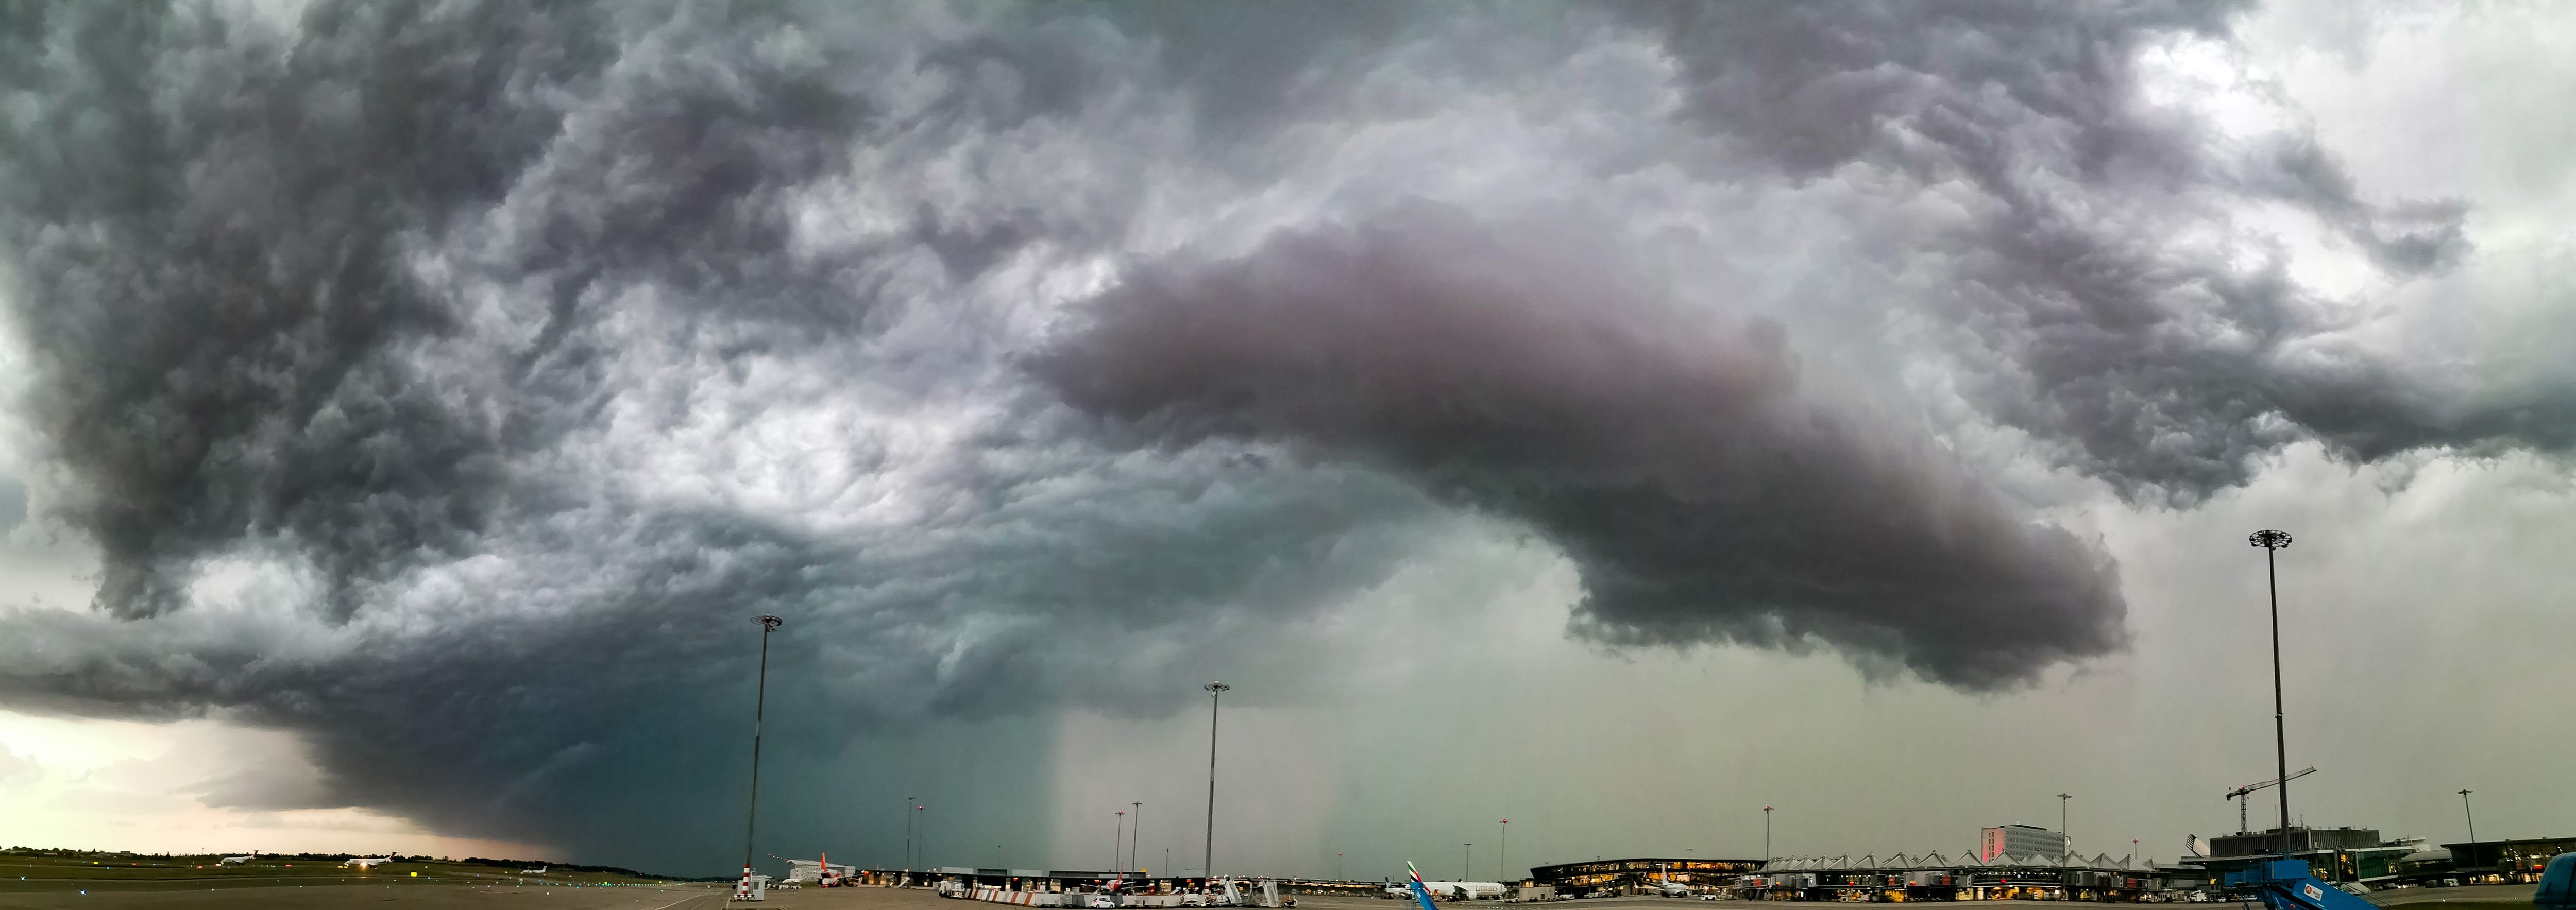 Panorama de l'arrivée imminente de l'orage pris depuis le tarmac de l'aéroport de Lyon Saint Exupéry - 01/07/2019 20:23 - Issam EL KHALLADI